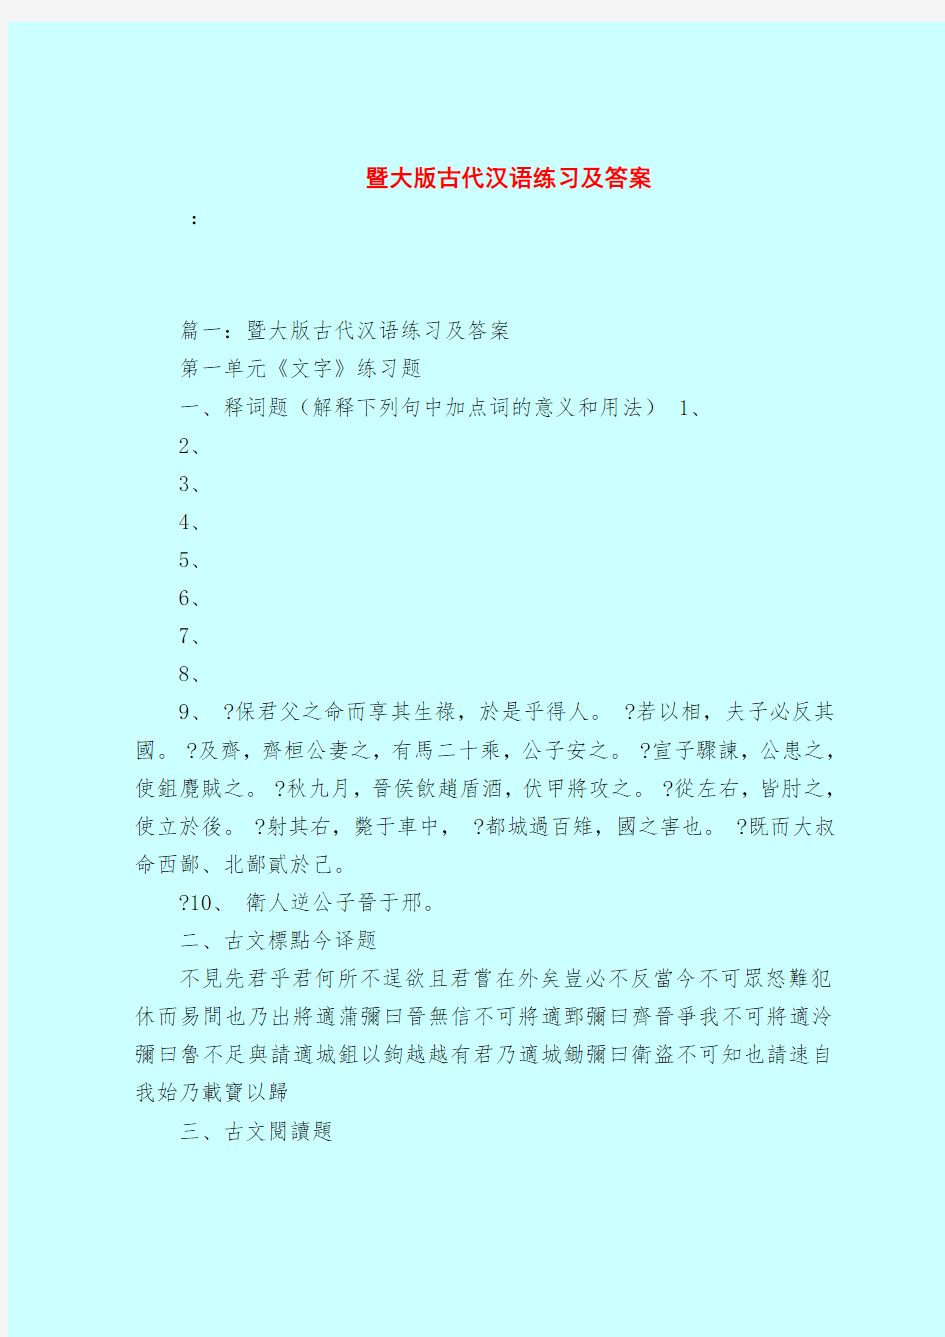 【最新试题库含答案】暨大版古代汉语练习及答案_0